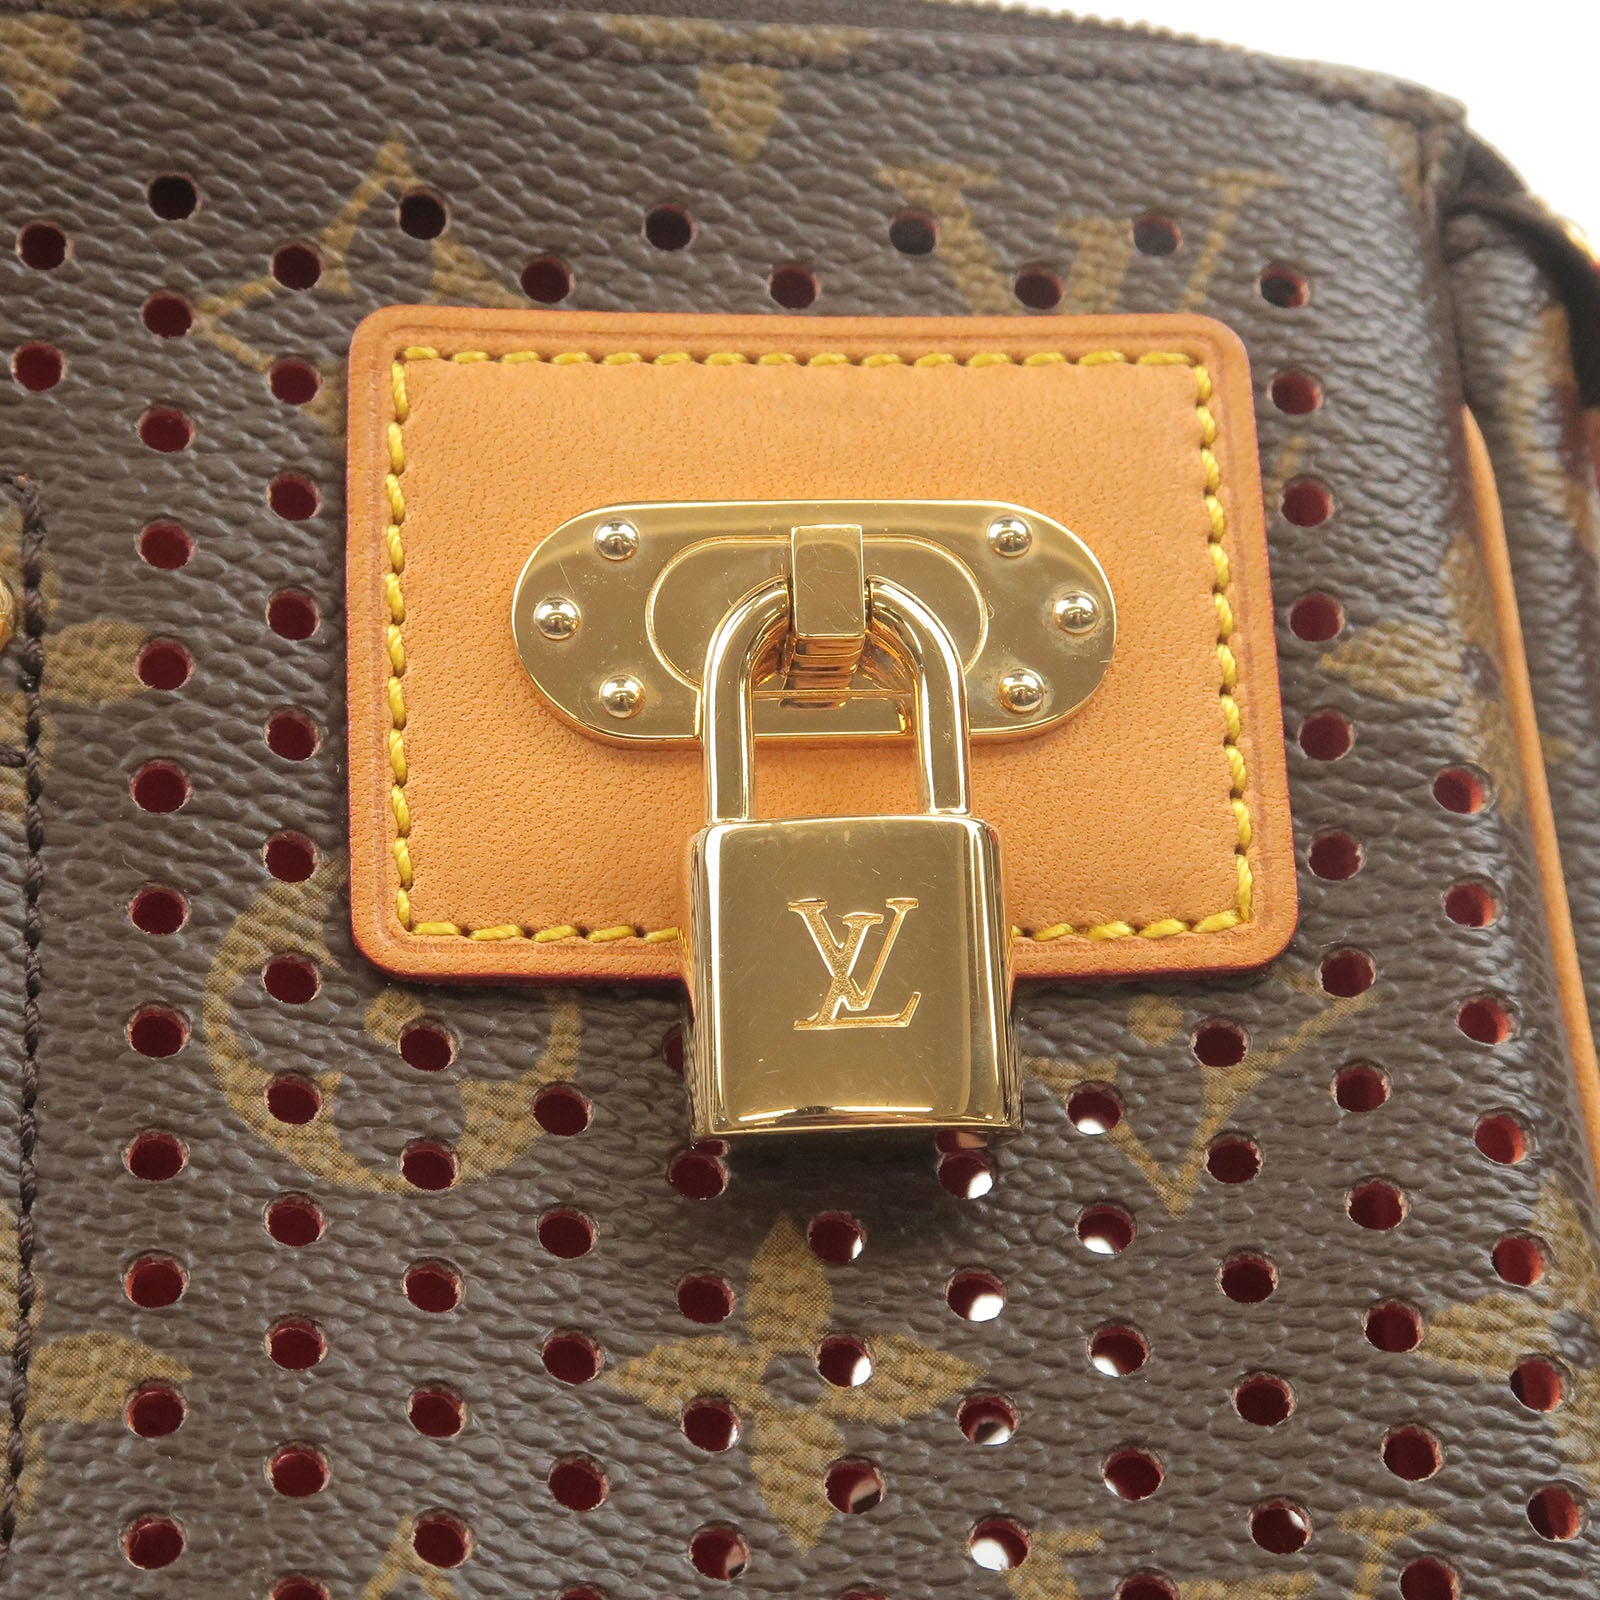 Louis Vuitton Monogram Perforated Coated Canvas Pochette Accessoires Bag